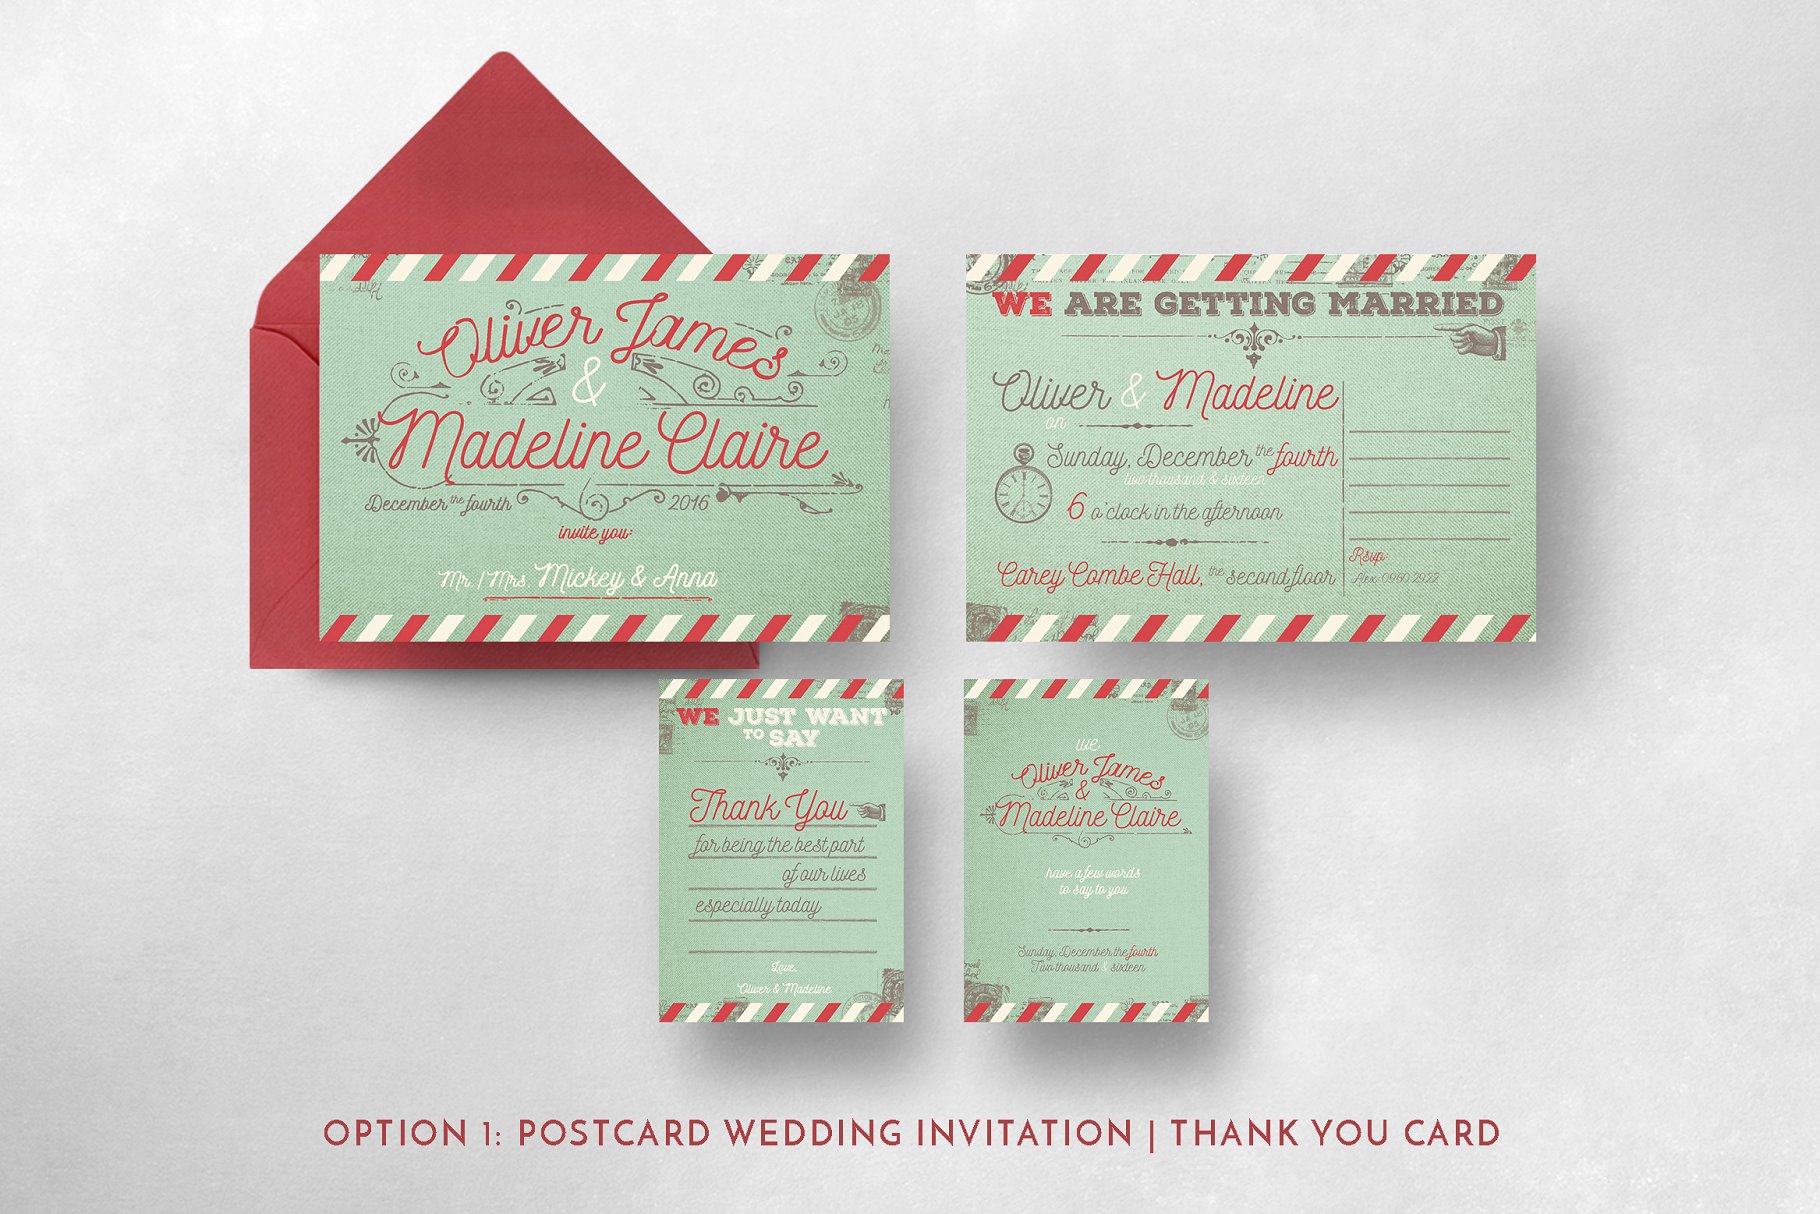 复古航空邮件婚礼设计套件 Vintage Airmail Wedding Suite插图(3)